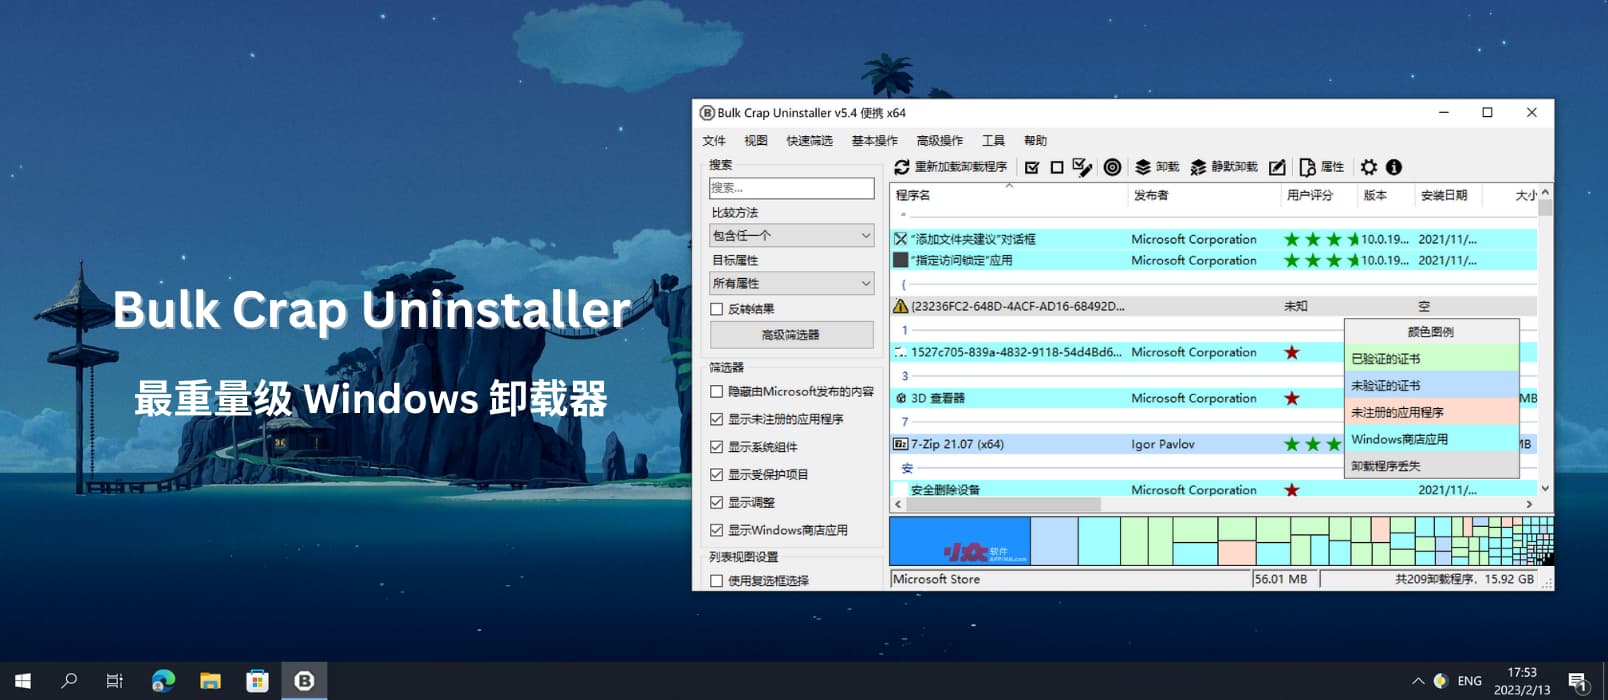 Bulk Crap Uninstaller - 最重量级卸载器，能扫便携软件、游戏，速度又快，免费开源[Windows]